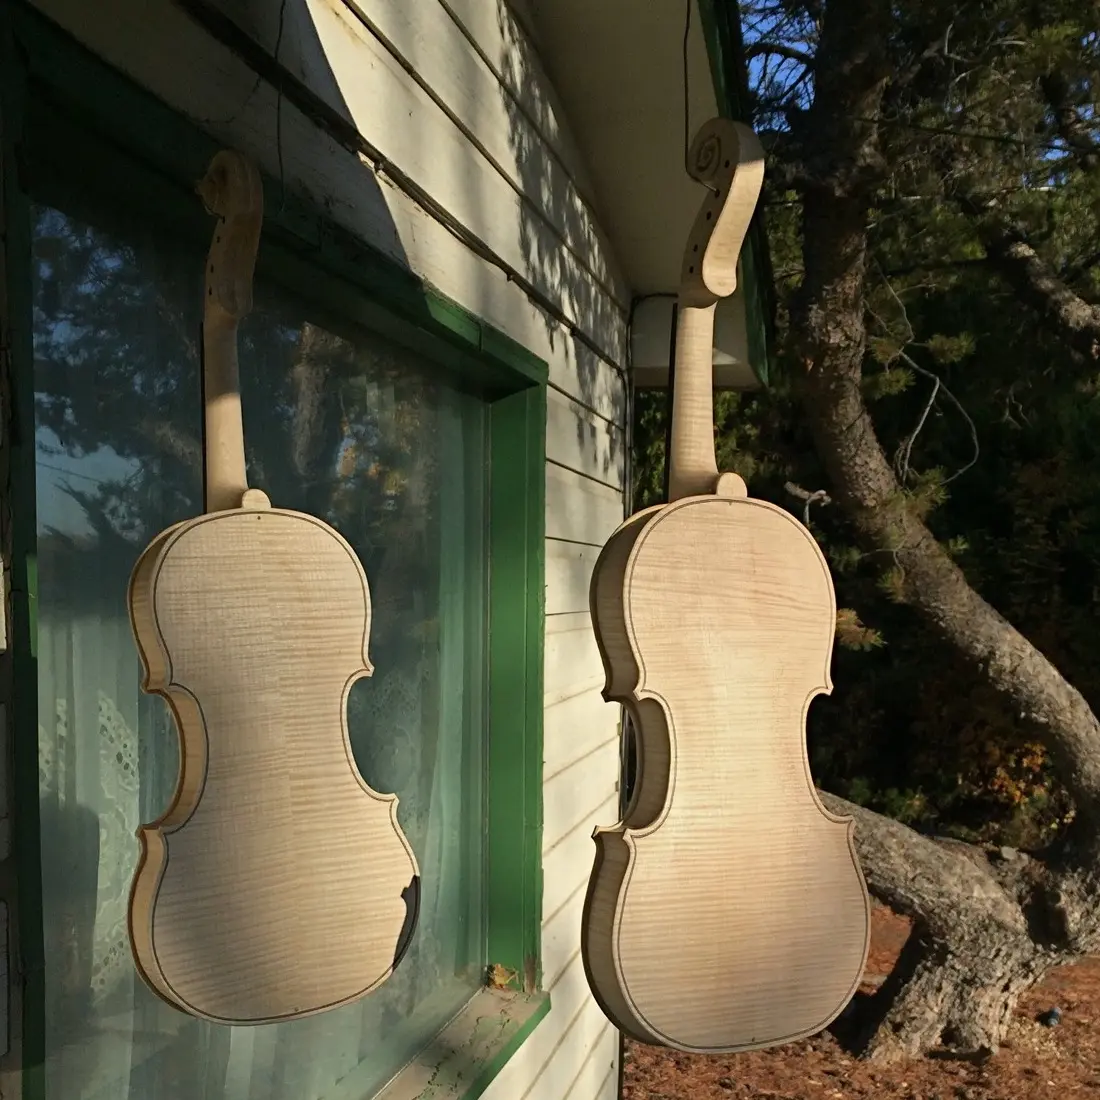 Owyhee Mountain Fiddle Shop